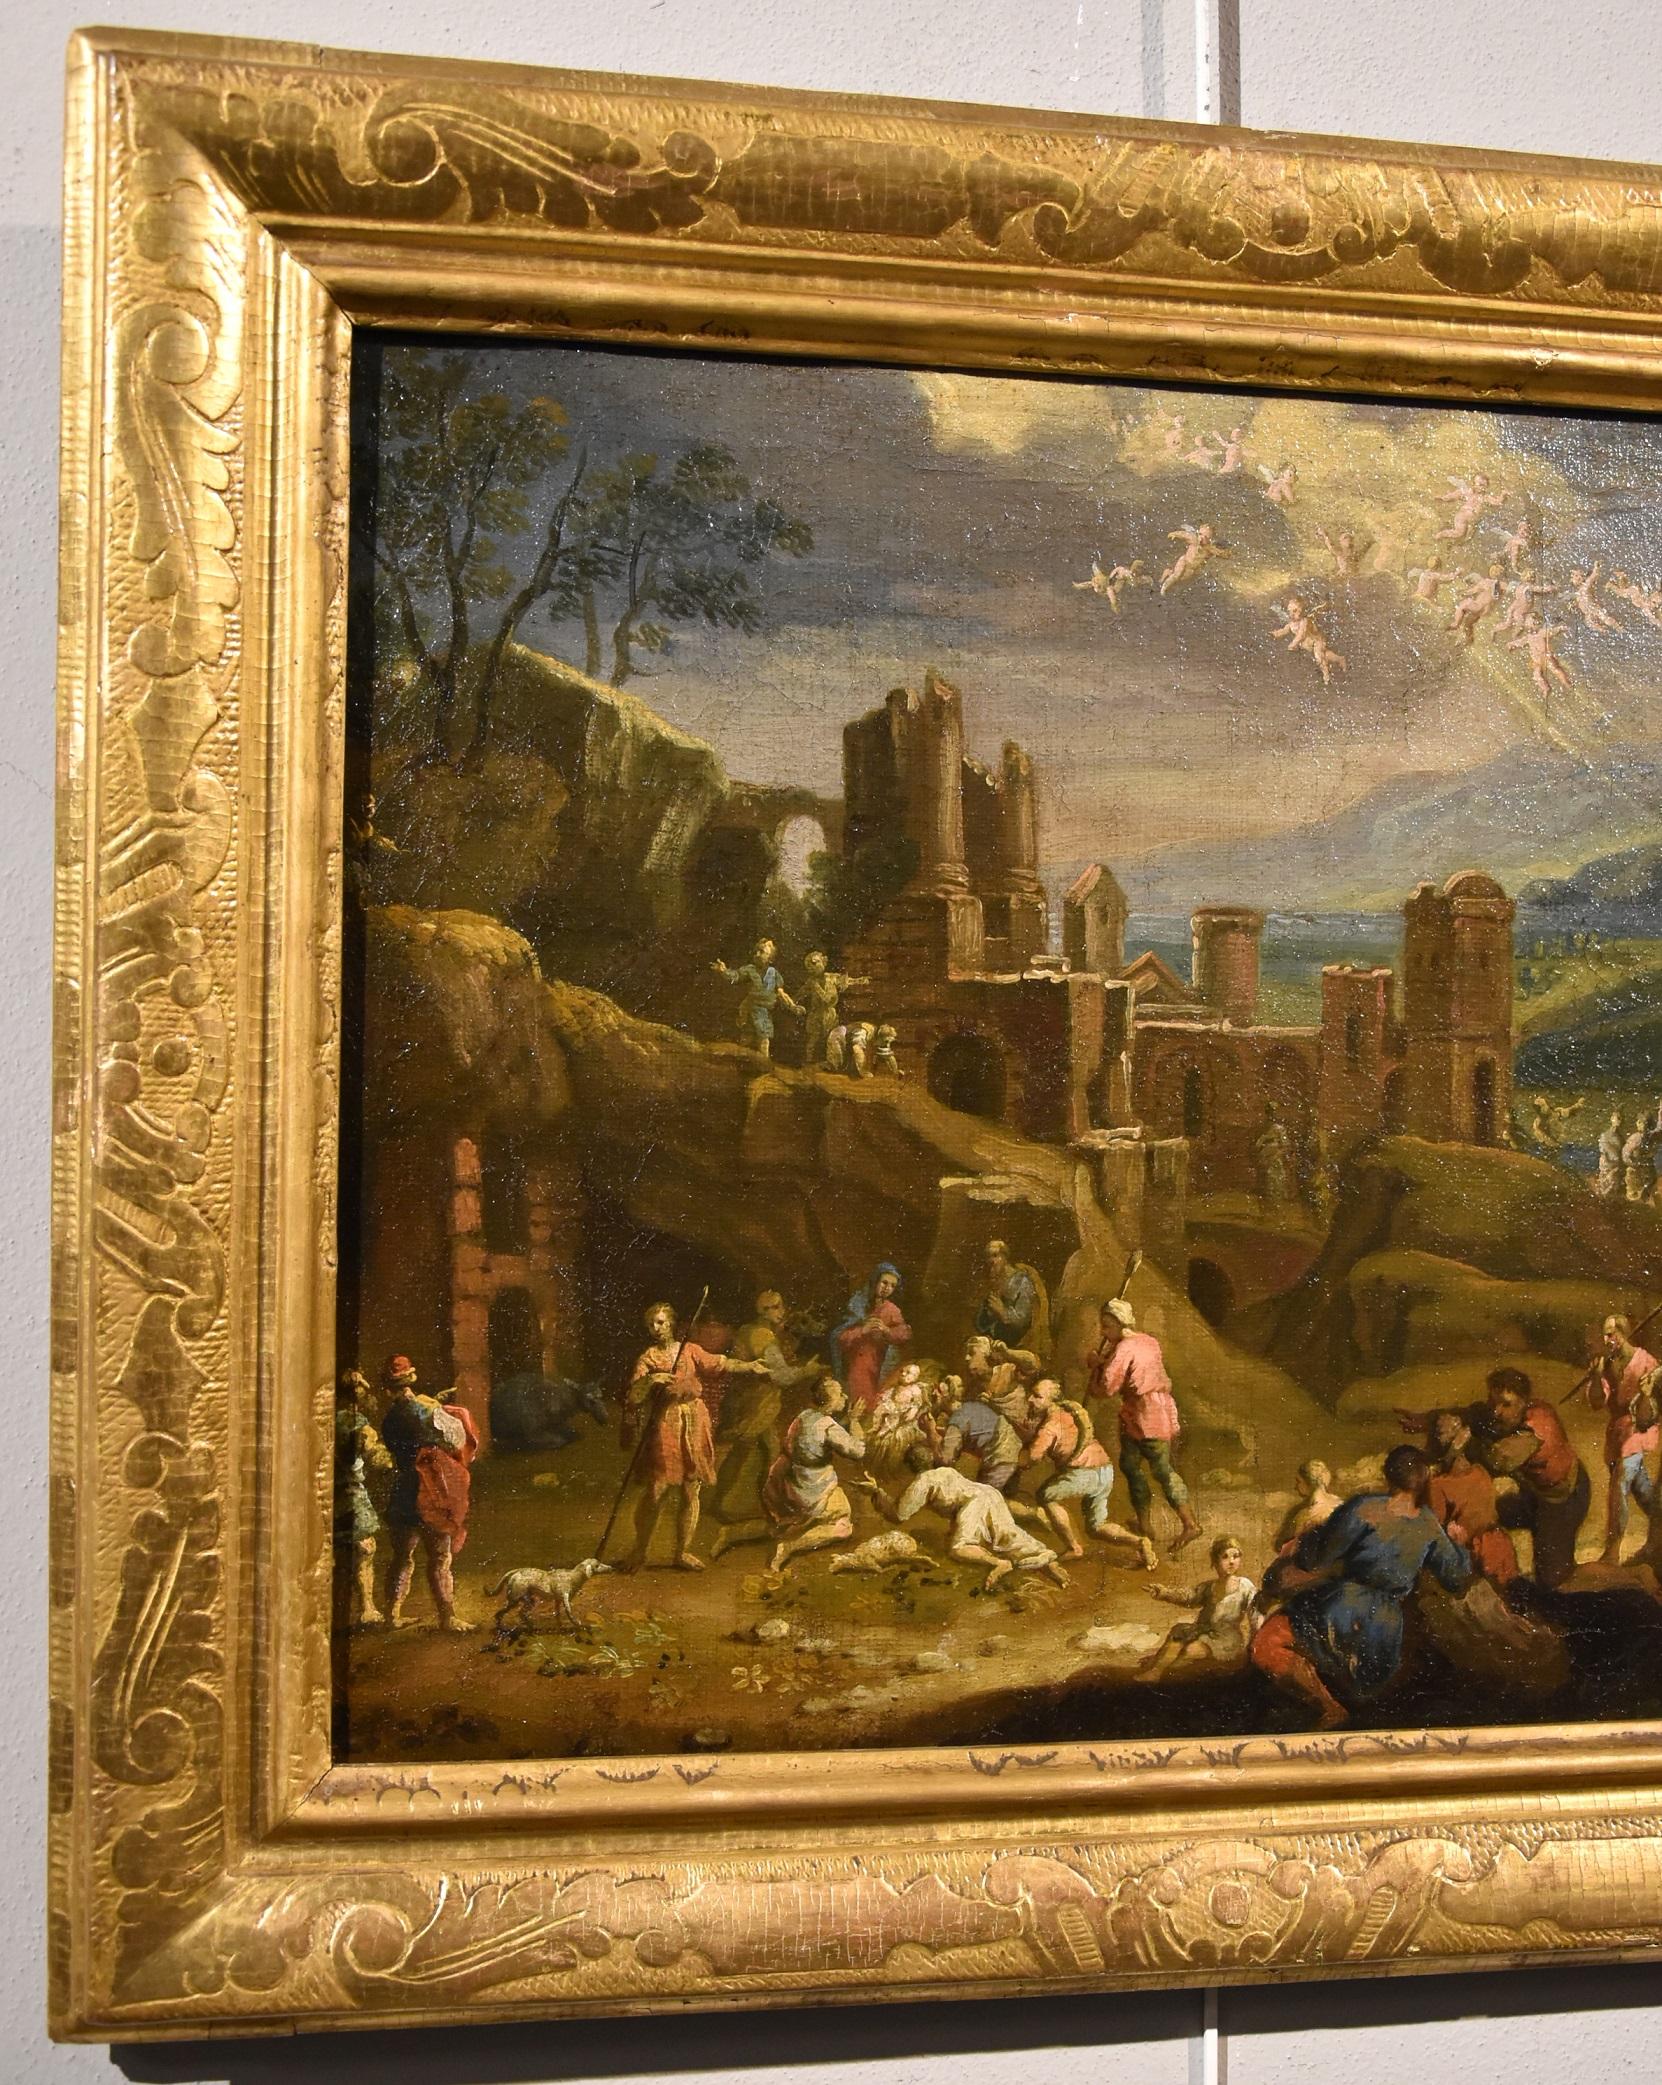 Landschaft, religiöse Malerei, Öl auf Leinwand, alter Meister, 17. Jahrhundert, Italien – Painting von Scipione Compagni, or Compagno (Naples, about 1624 - after 1680)